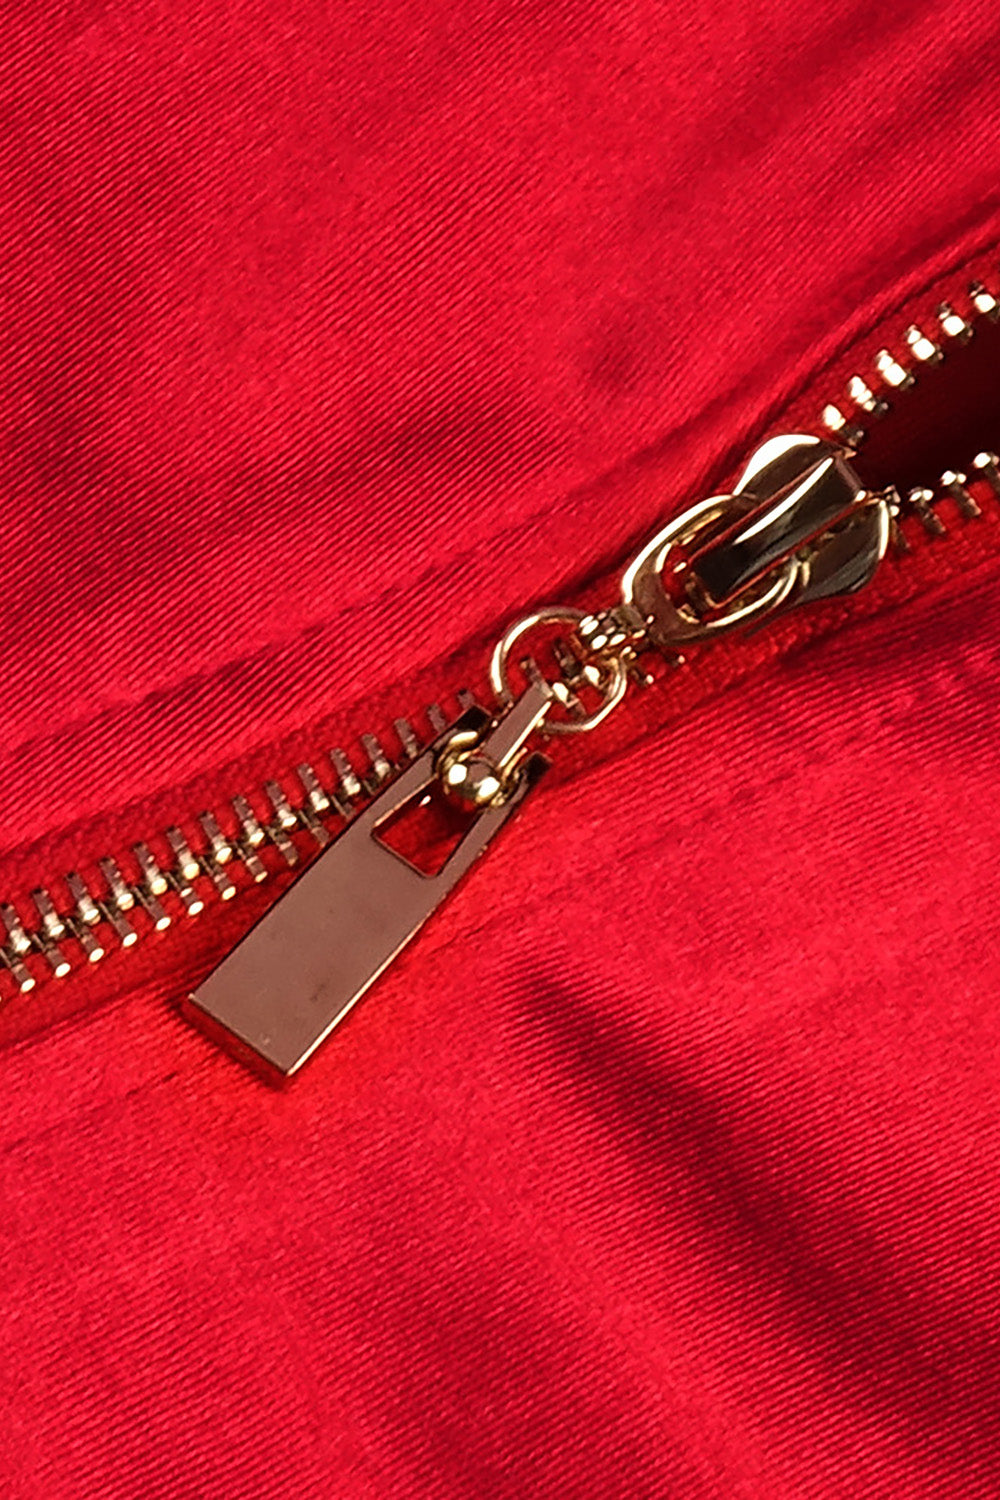 Robe bustier en satin rouge rehaussée d'une jupe en crêpe